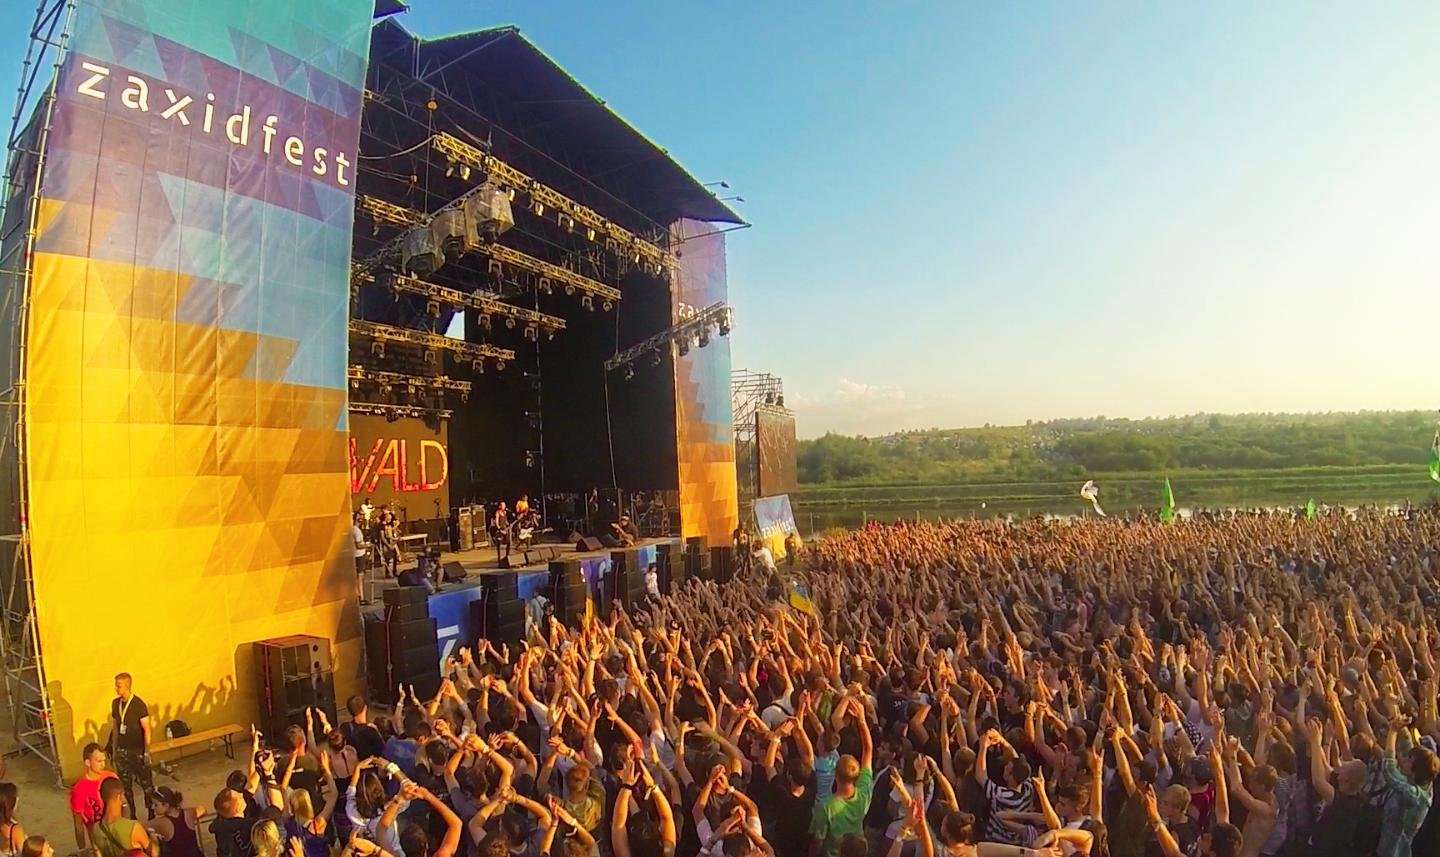 Cамые горячие музыкальные фестивали этого лета, которые пройдут в Украине - фото 437127